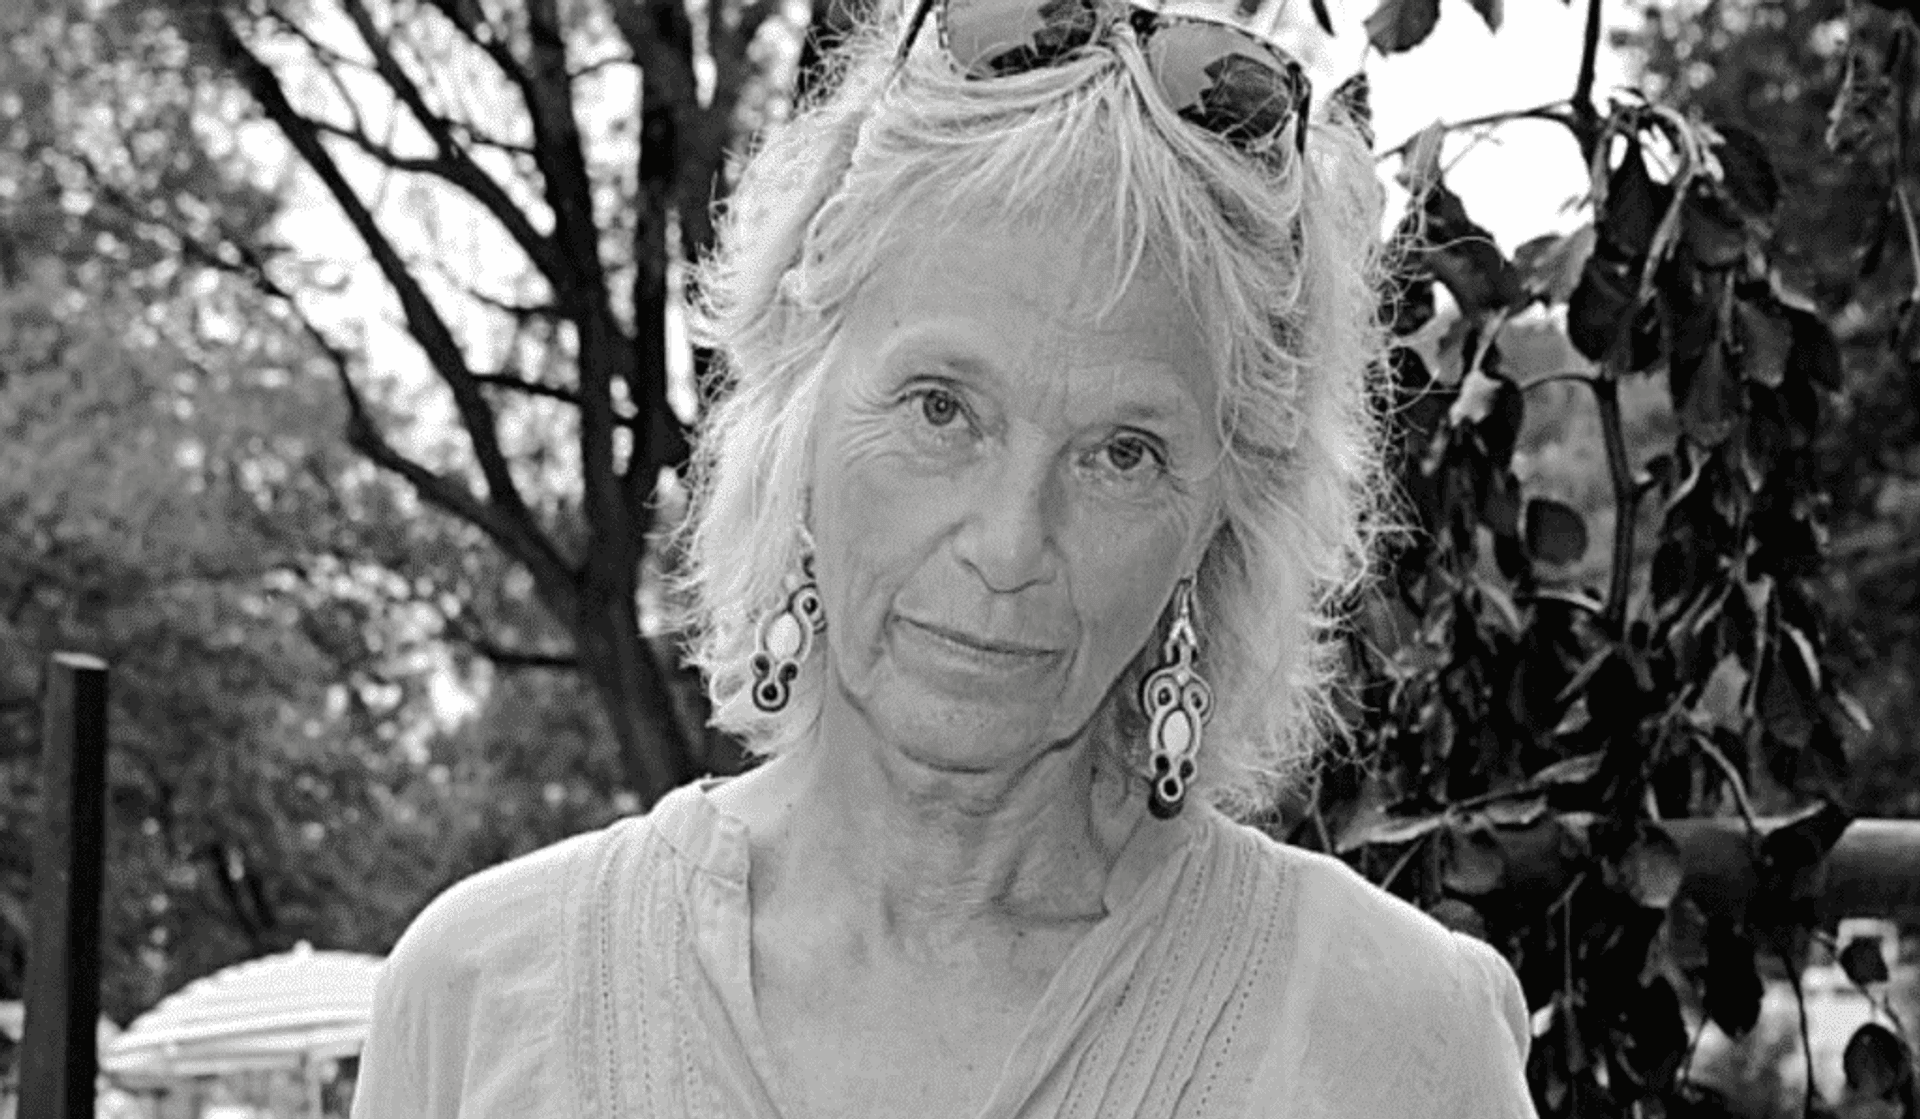 Małgorzata Braunek